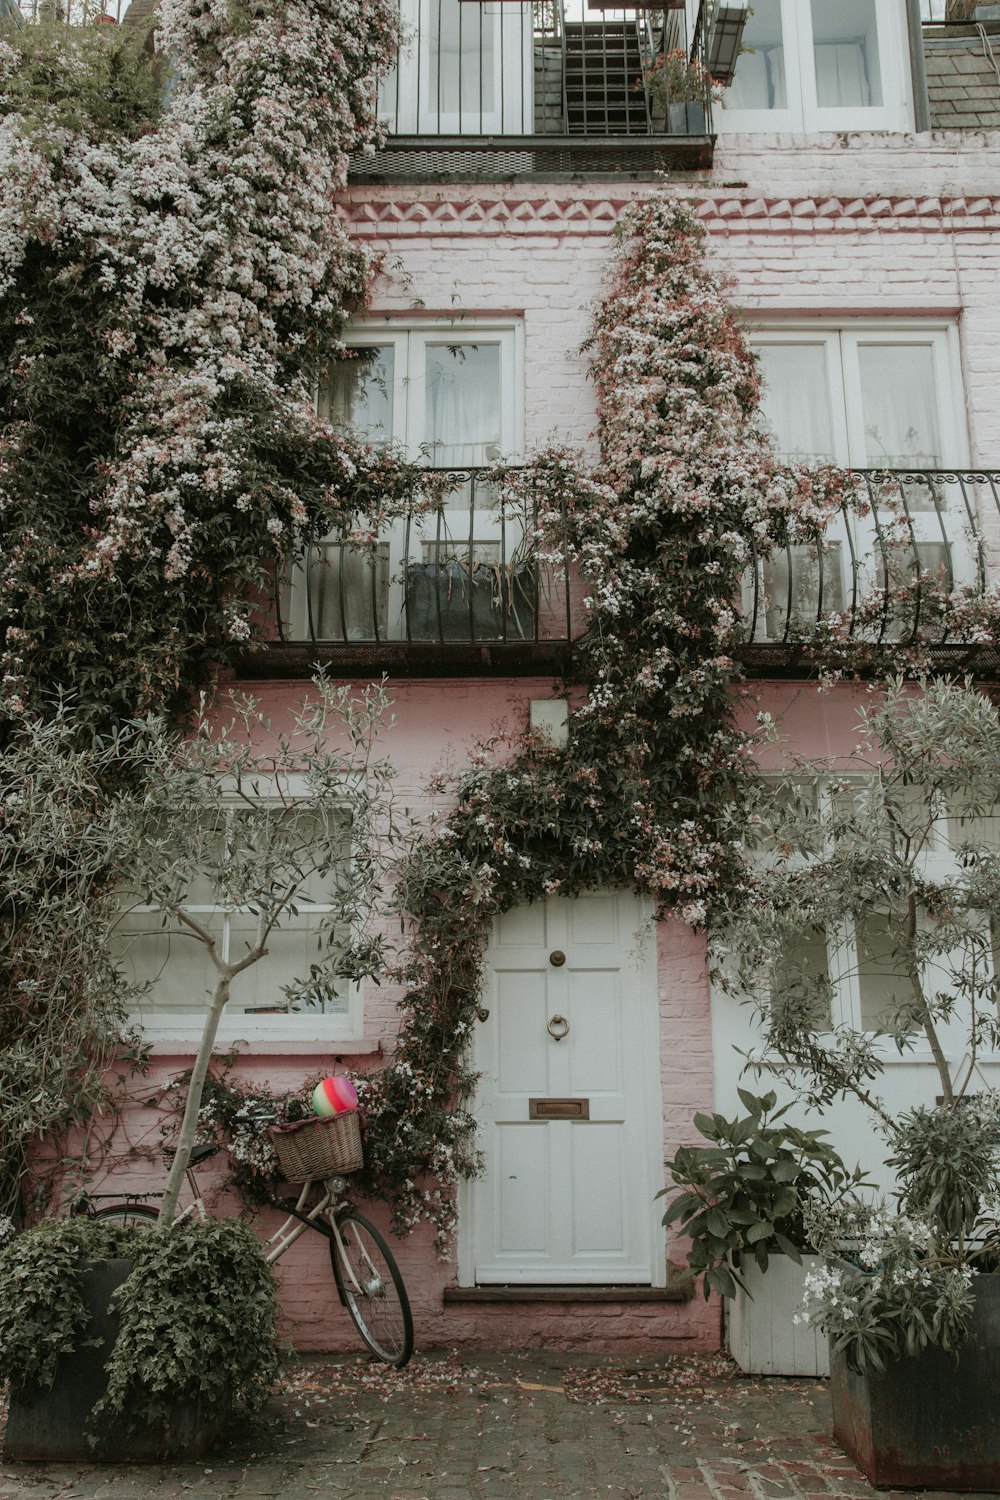 Maison peinte en rose et blanc recouverte de plantes et de fleurs